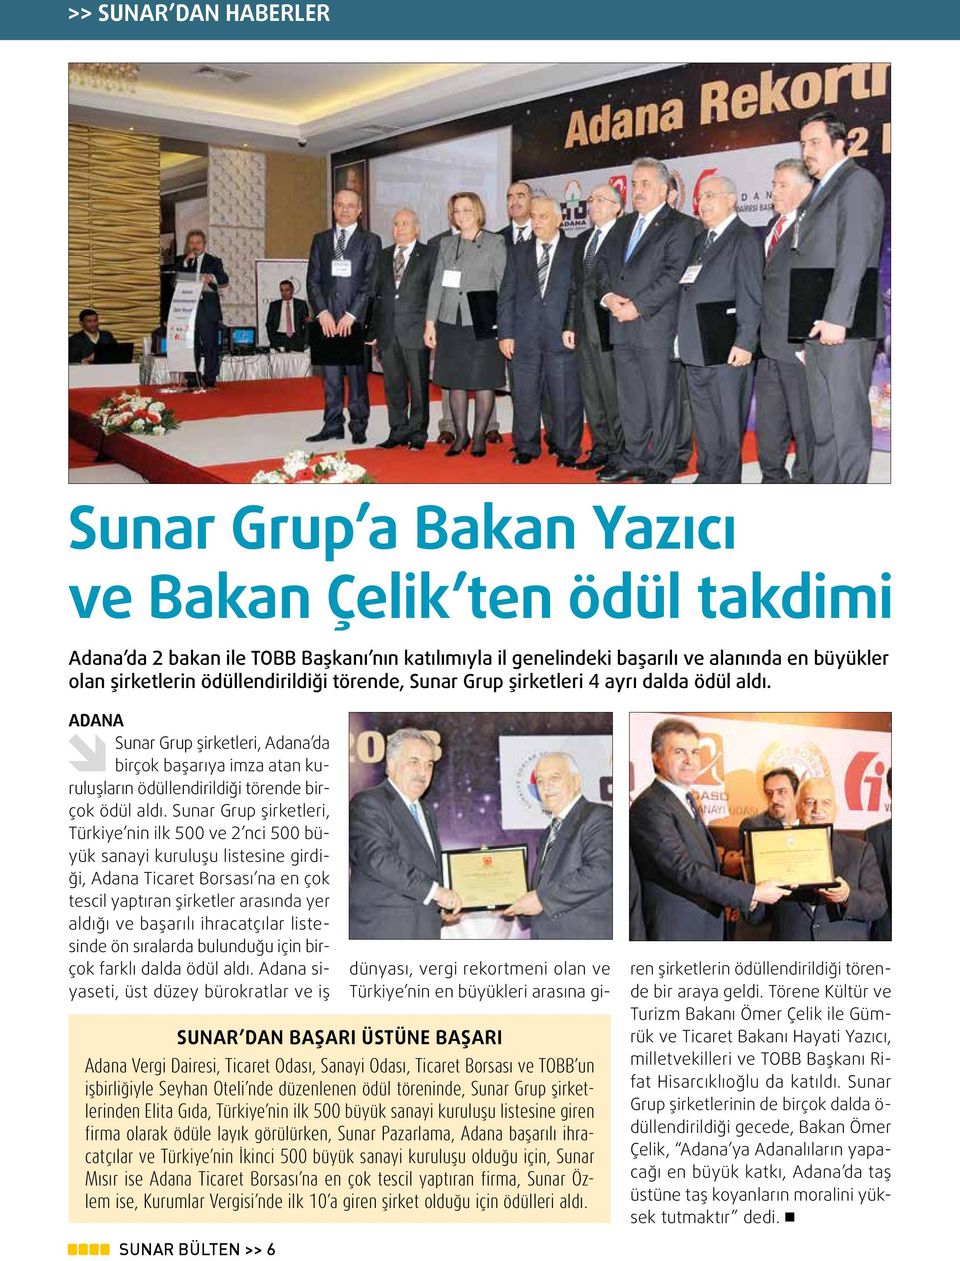 Sunar Grup şirketleri, Türkiye nin ilk 500 ve 2 nci 500 büyük sanayi kuruluşu listesine girdiği, Adana Ticaret Borsası na en çok tescil yaptıran şirketler arasında yer aldığı ve başarılı ihracatçılar